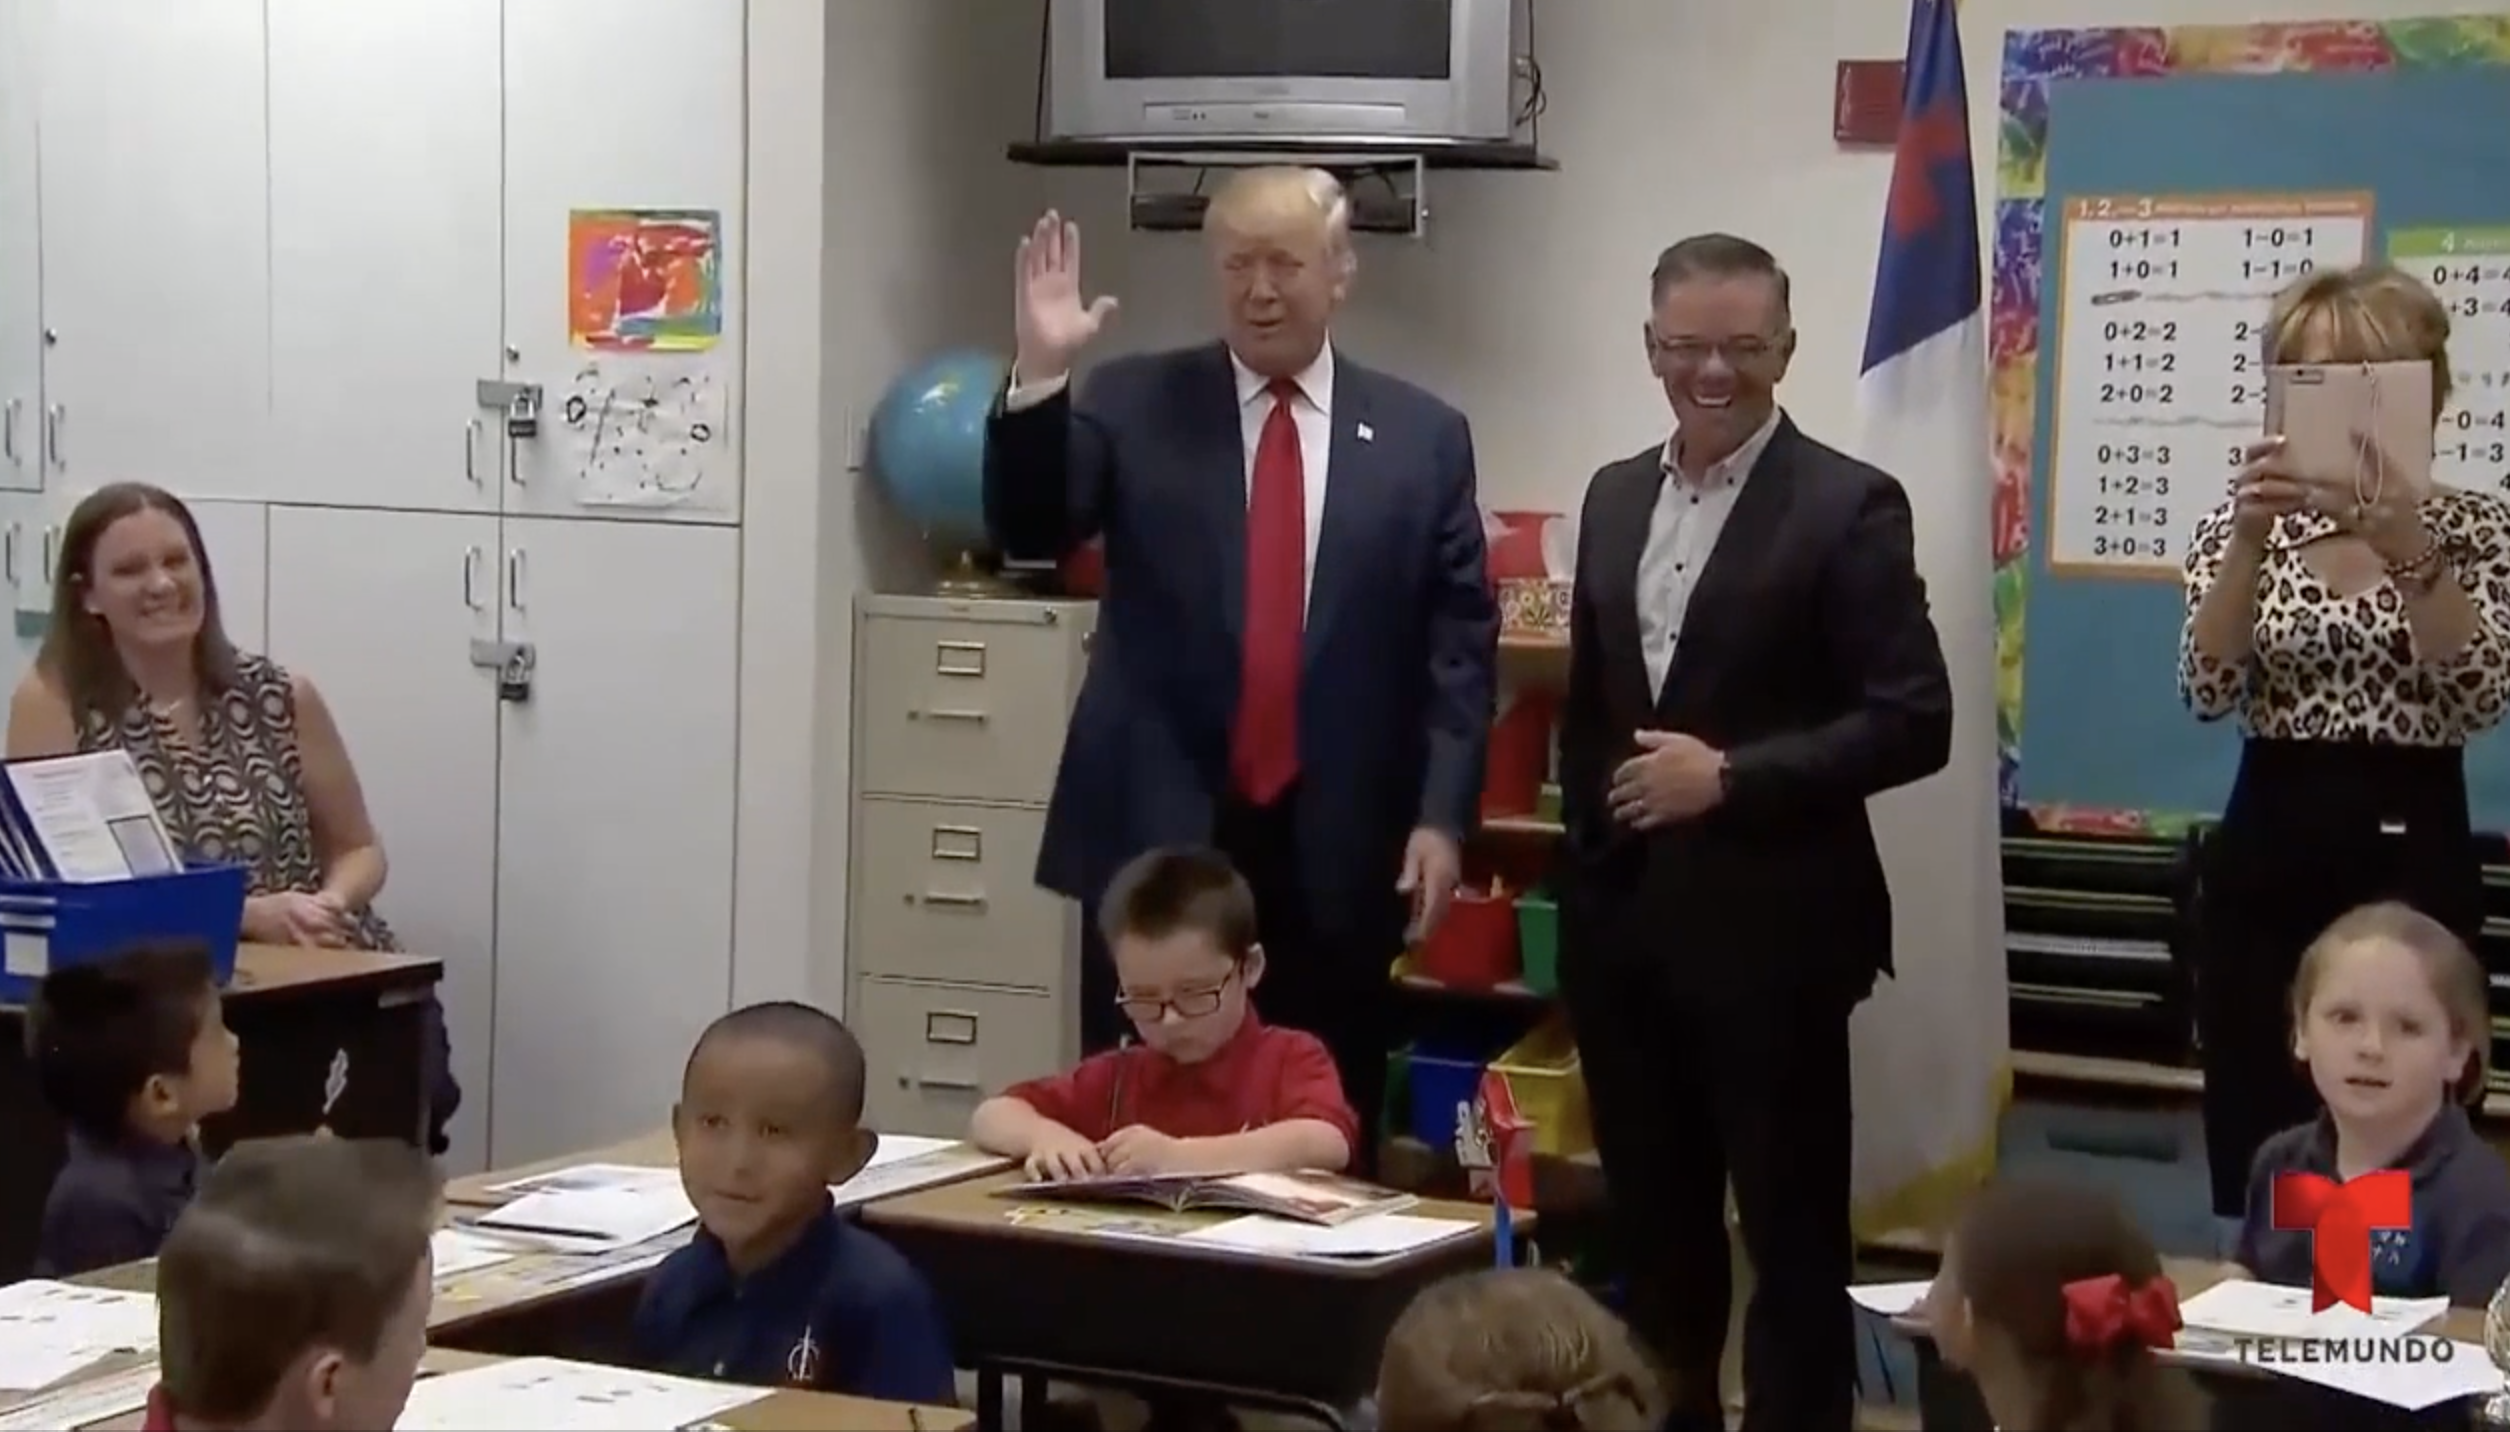 Mira Como Reaccionan Los Niños De Un Salón Al Ver A Donald Trump Entrar Al Aula